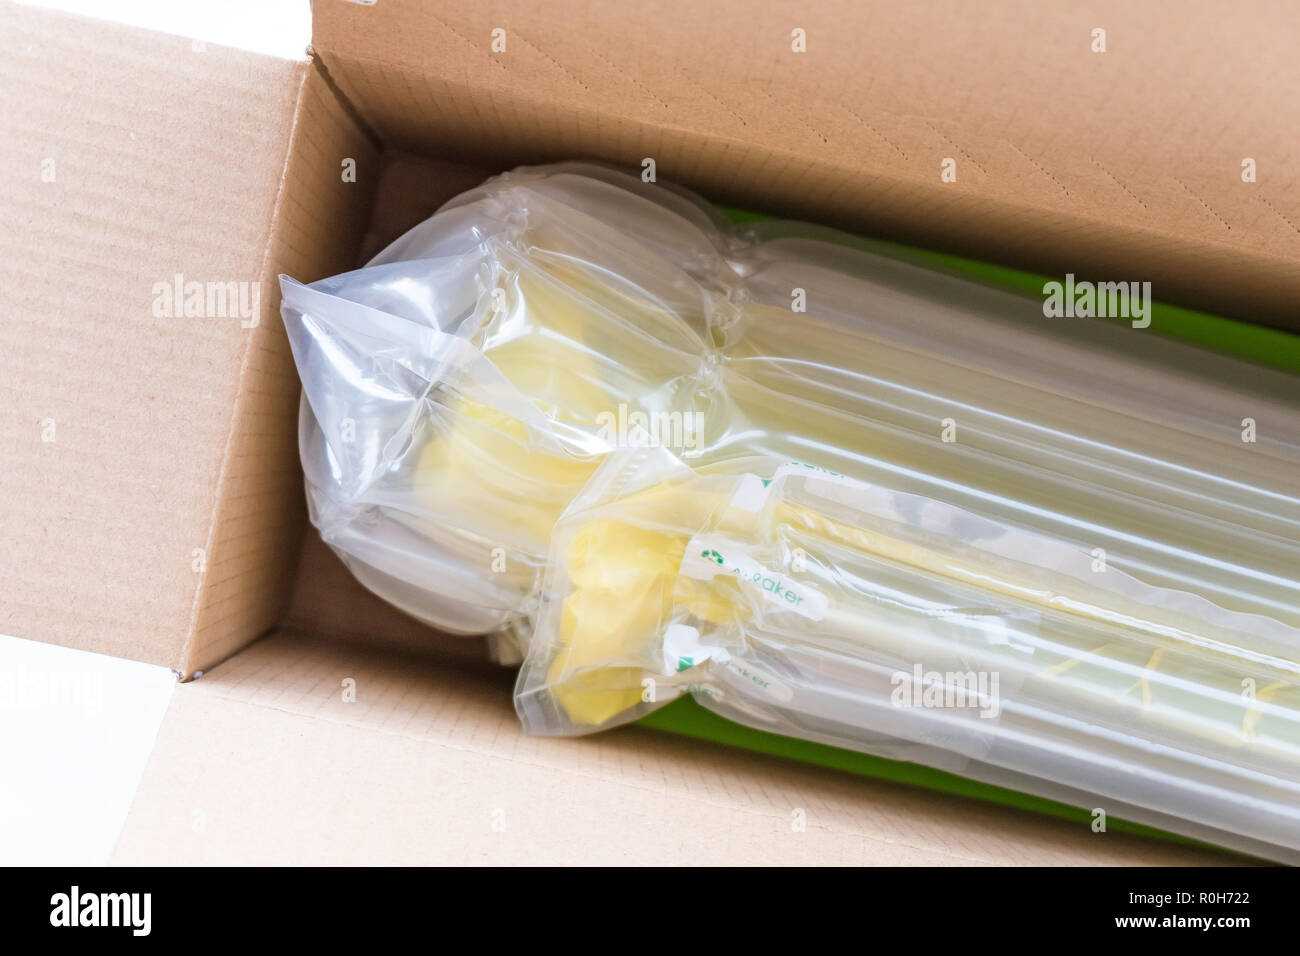 Durchsichtige Luft Verpackung, Schutz von Waren, Verpackungen aus  Kunststoff Stockfotografie - Alamy